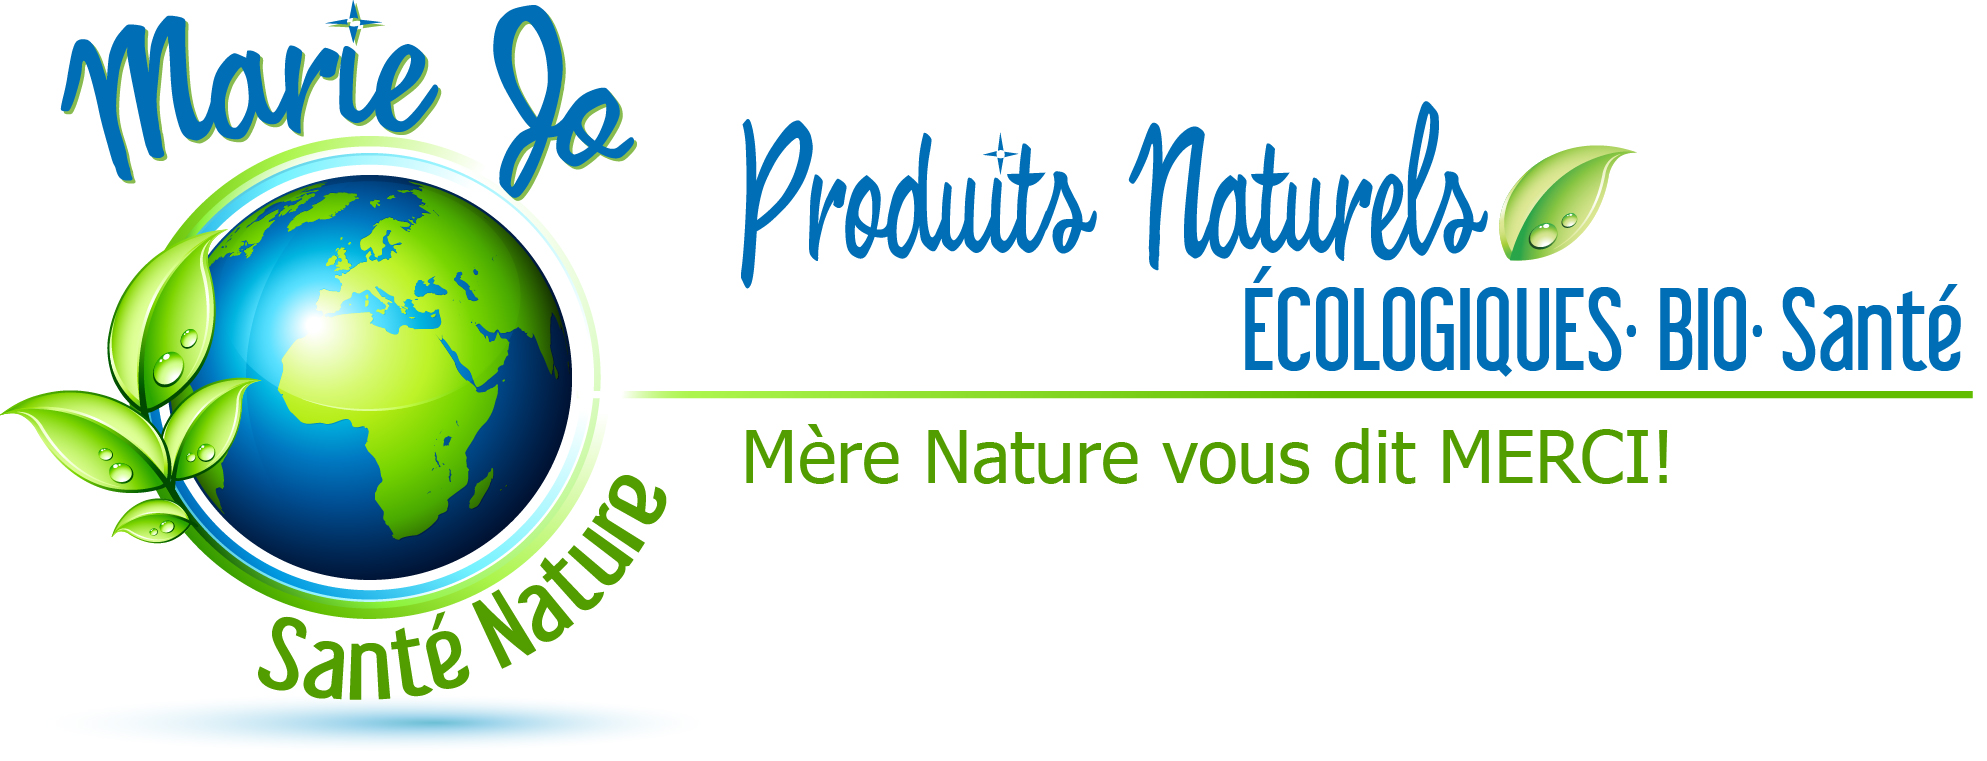 Boutique Marie Jo Santé Nature